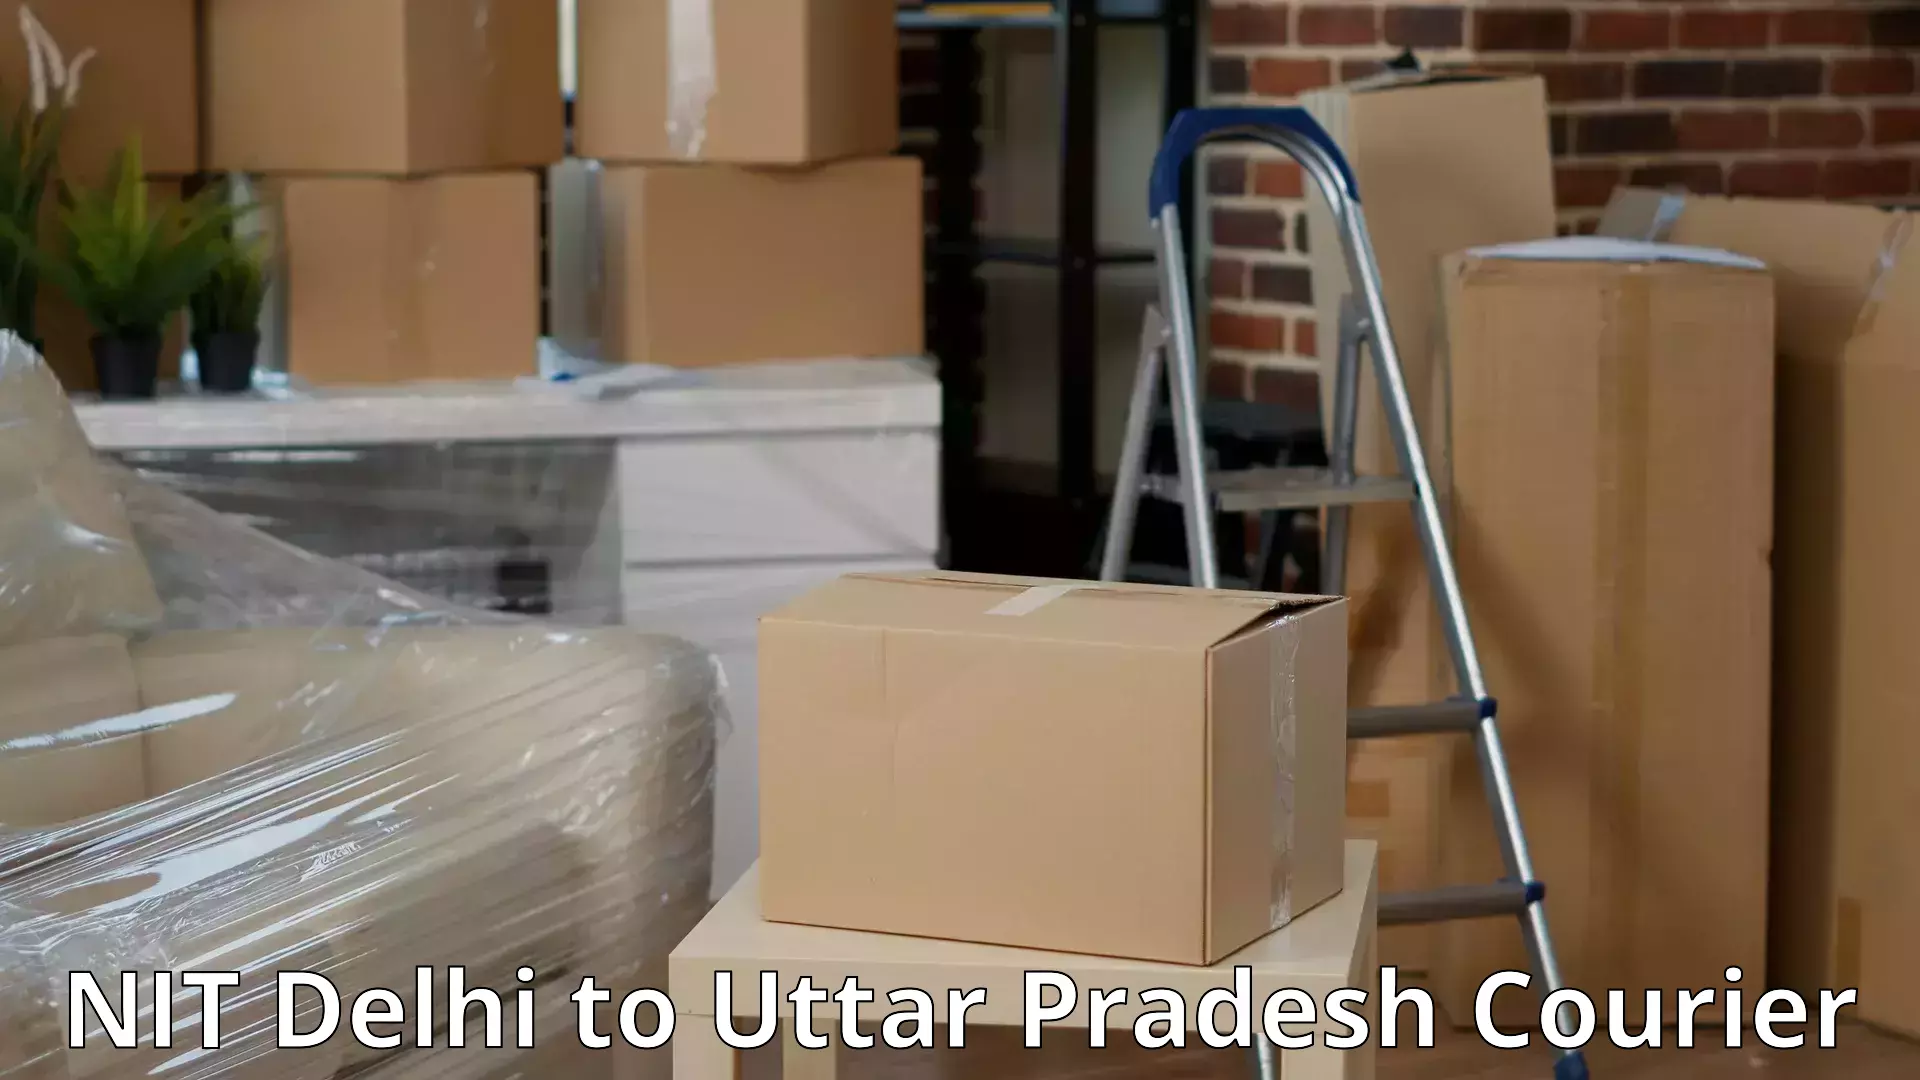 Quality moving company NIT Delhi to Konch